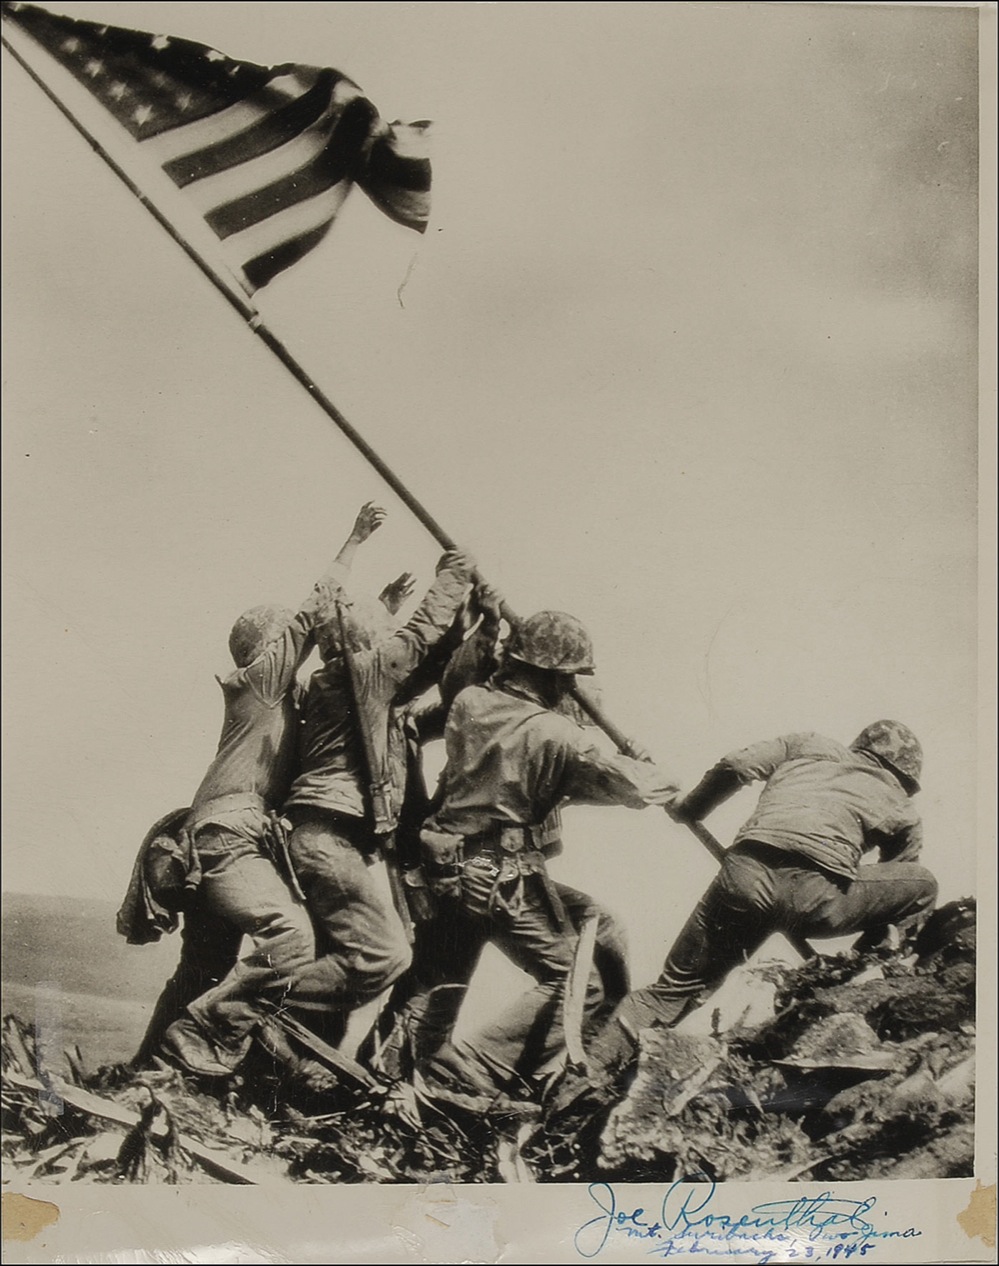 Lot #423 Iwo Jima: Joe Rosenthal